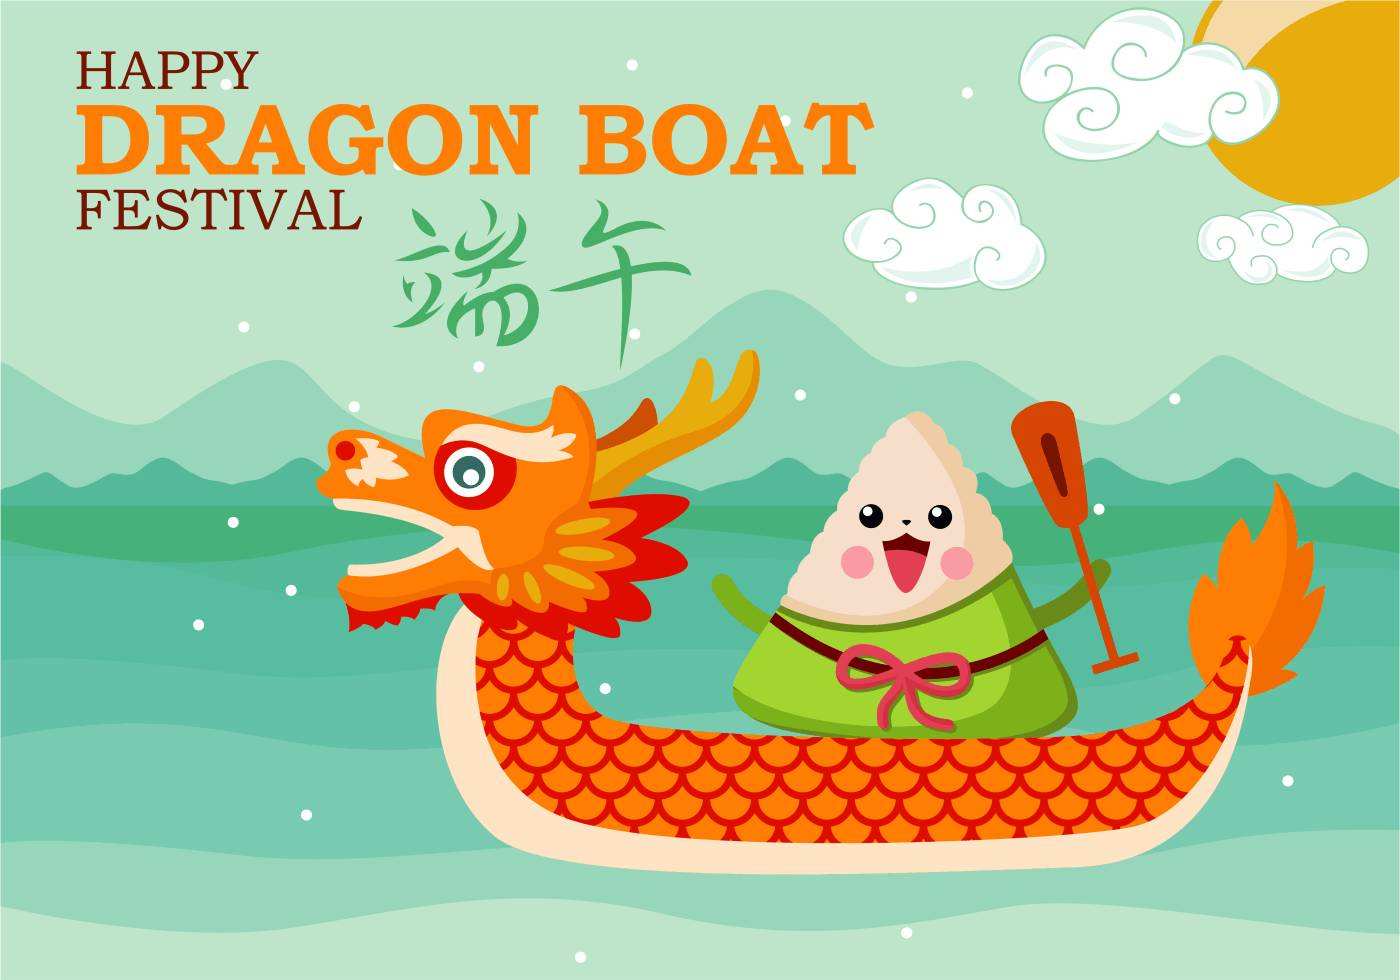 Dragon Boat Festival. 25th, June,2020.